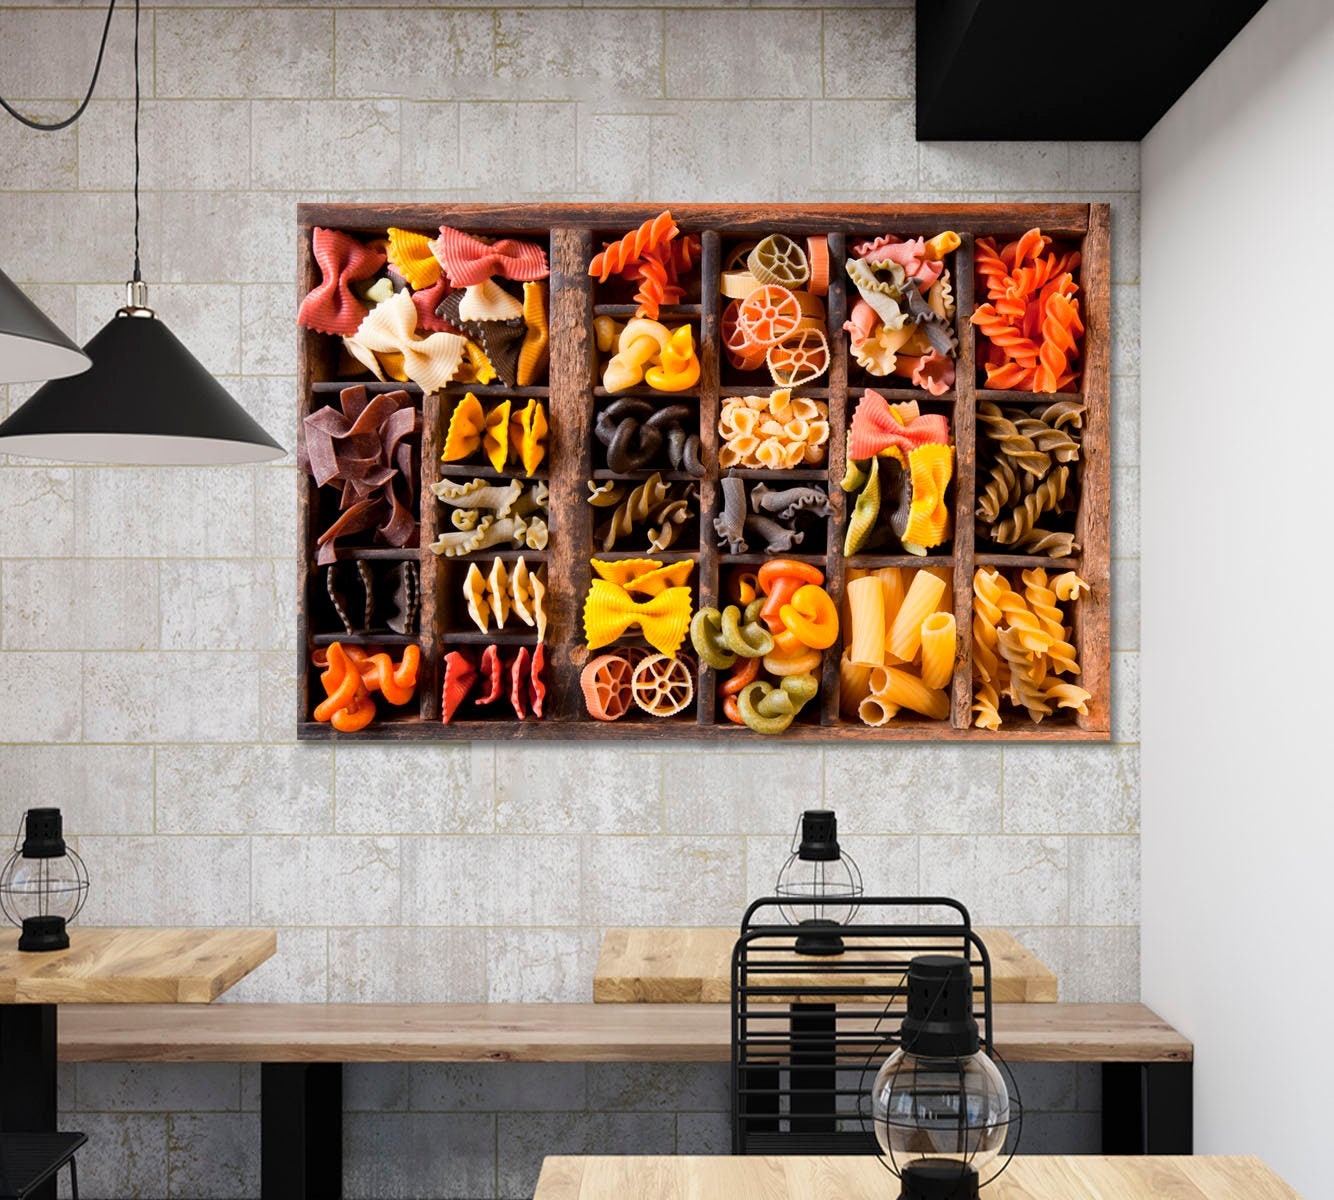 Décoration murale, pâtes colorées, décoration de restaurant